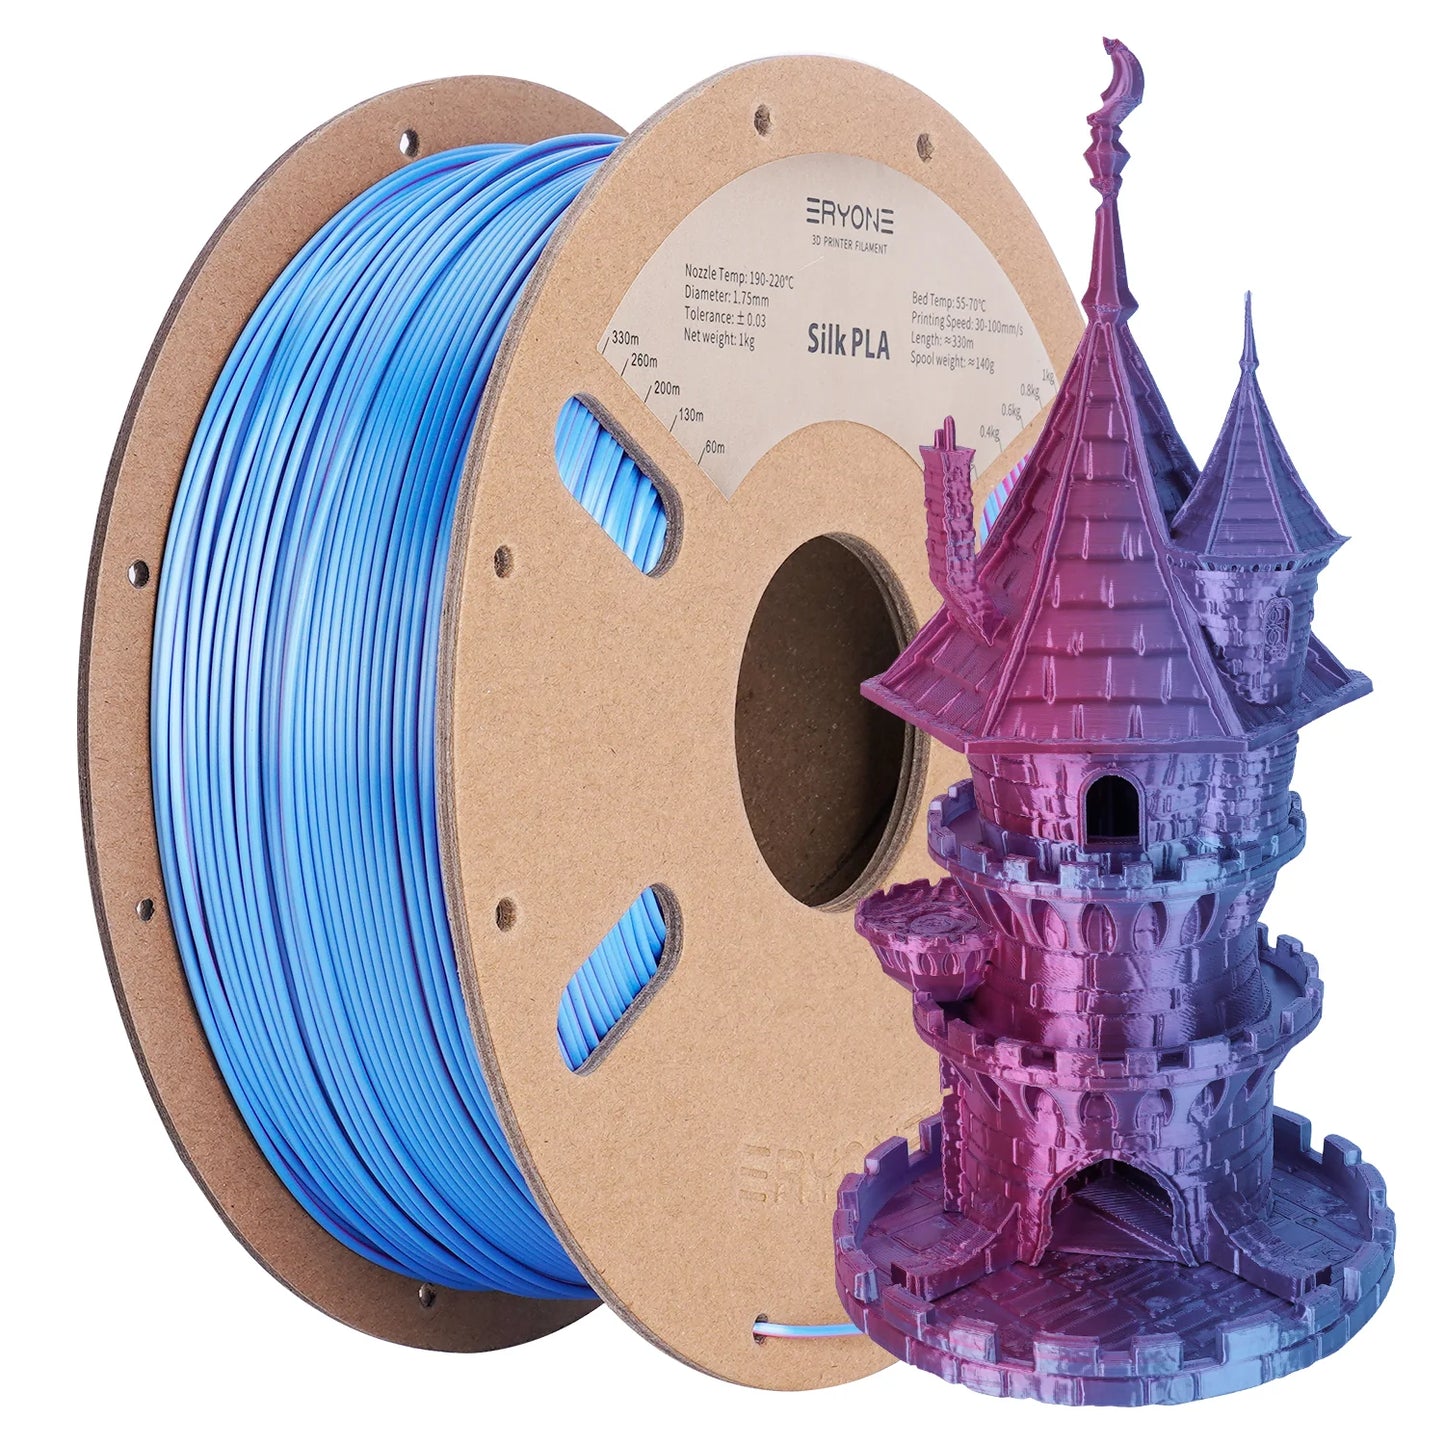 ERYONE Silk Dual-Color PLA Filament for 3D Printers